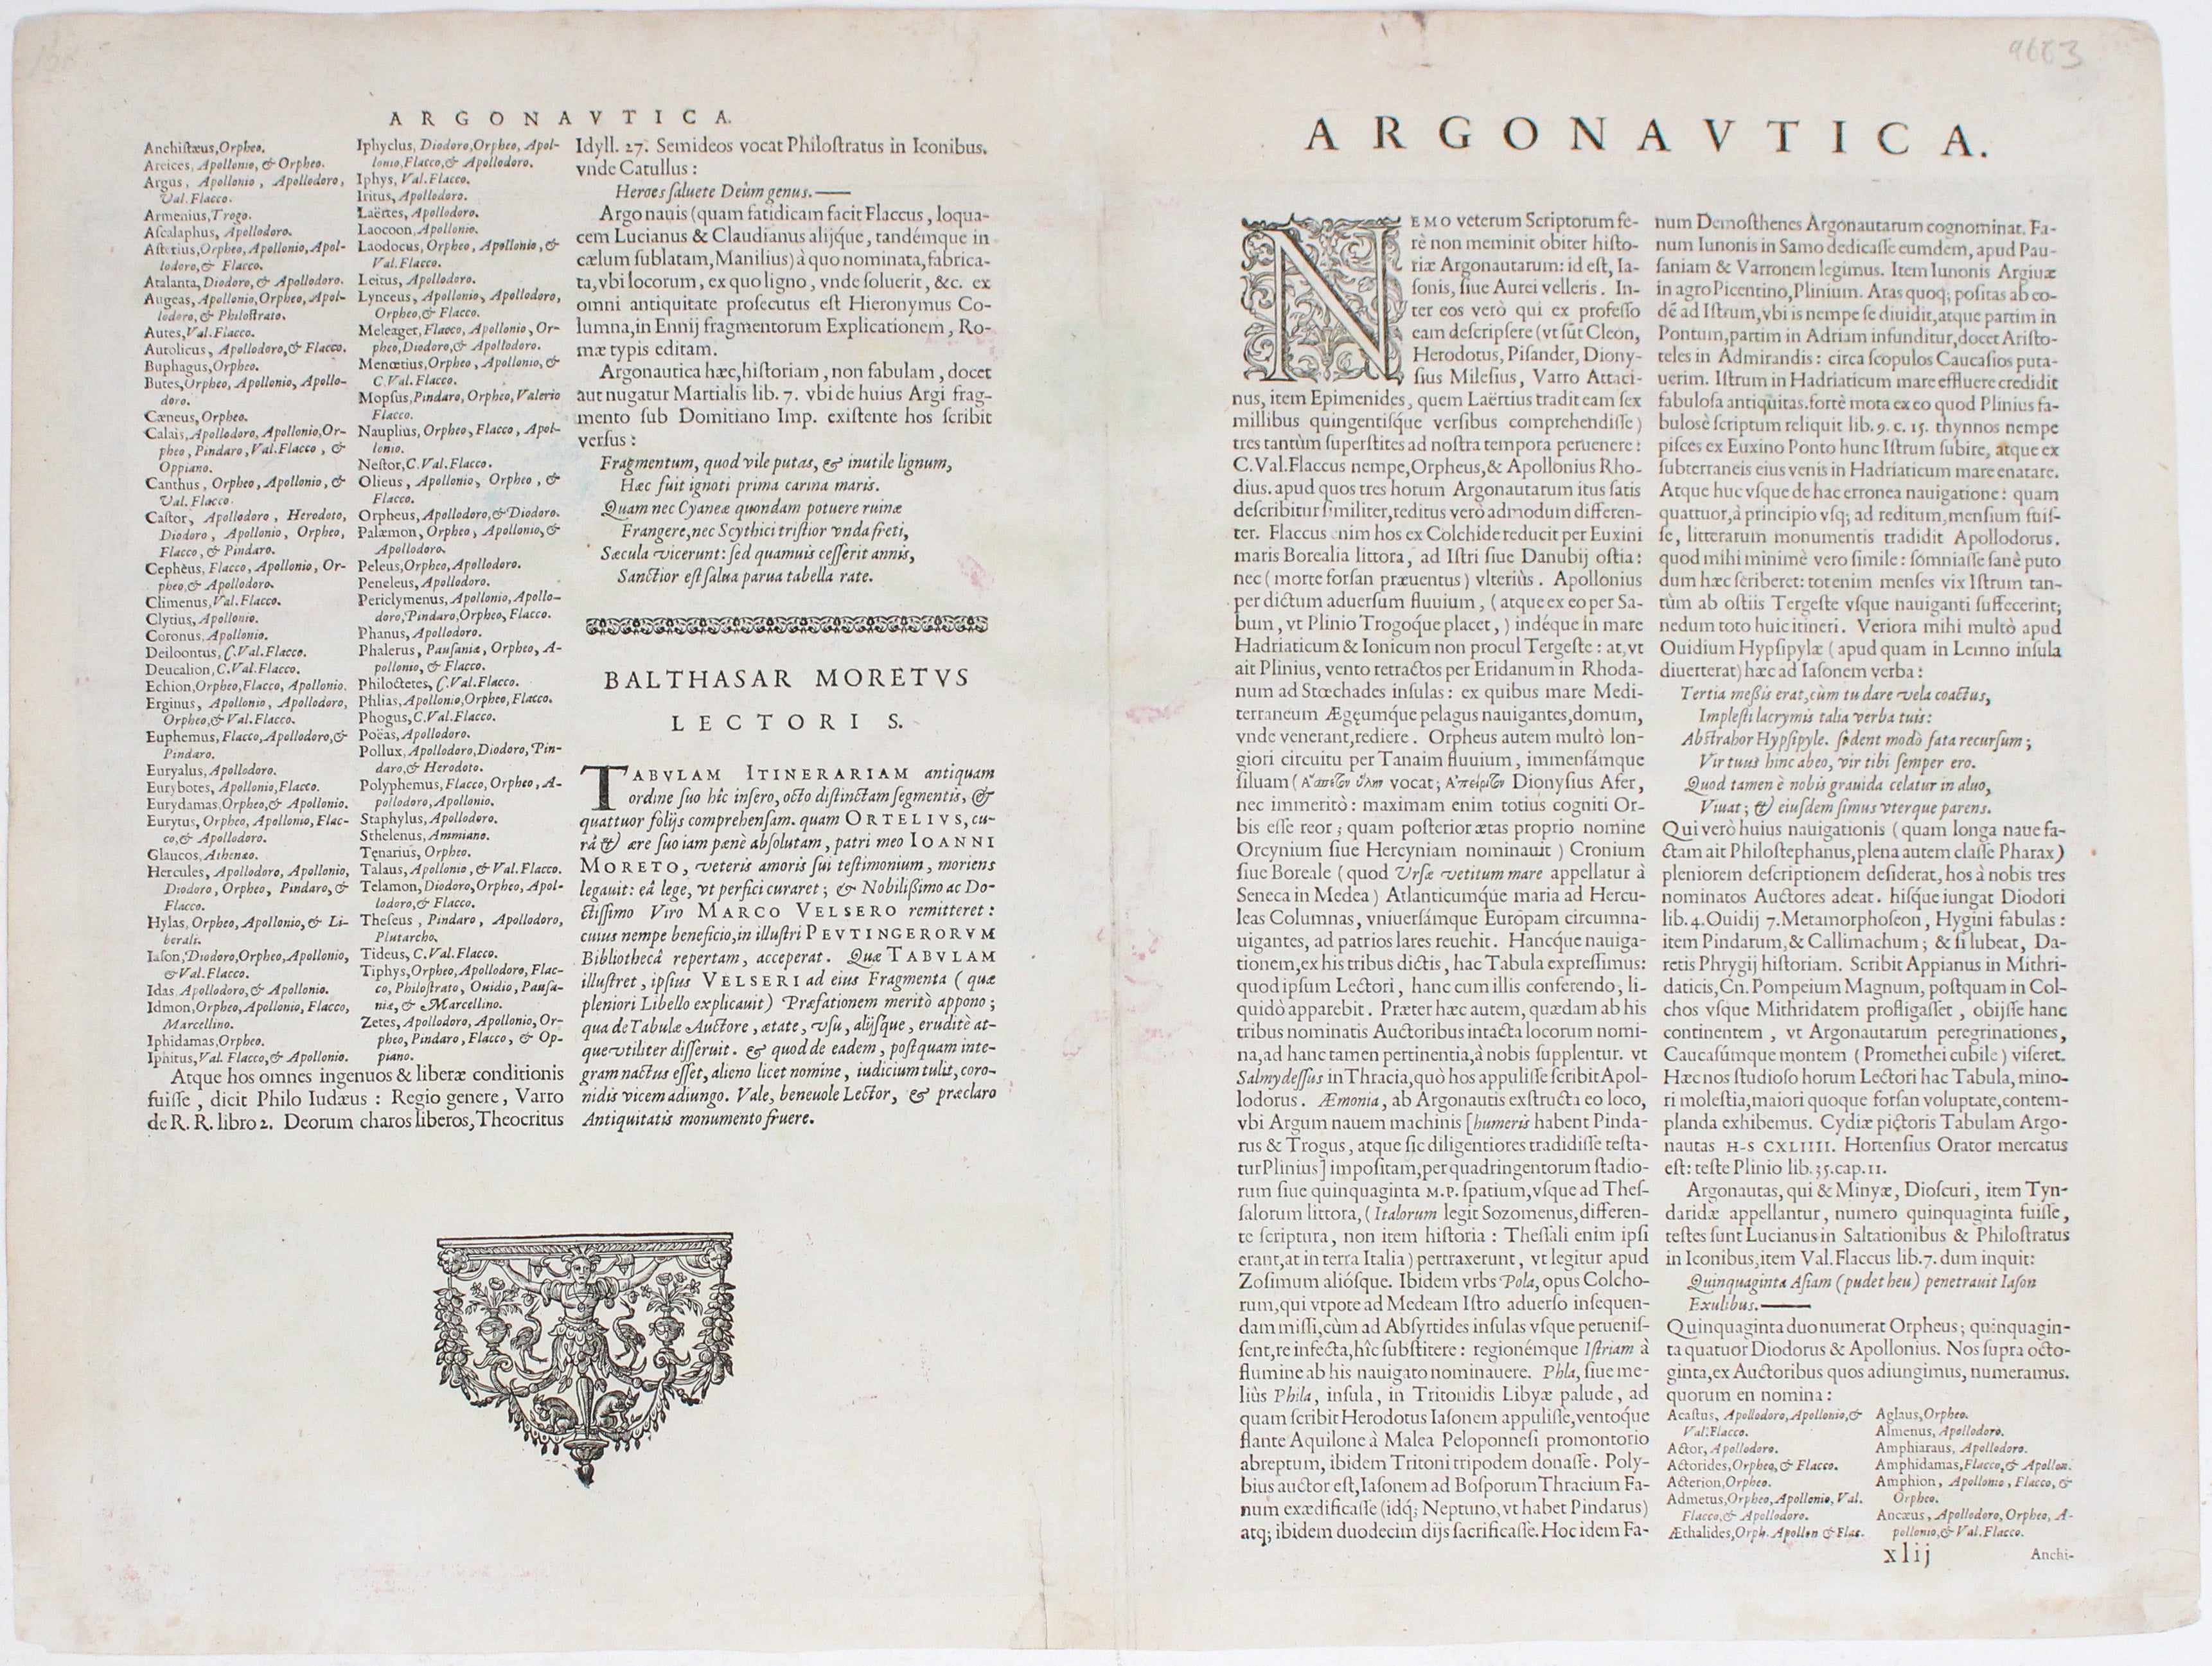 Ortelius' Argonautica